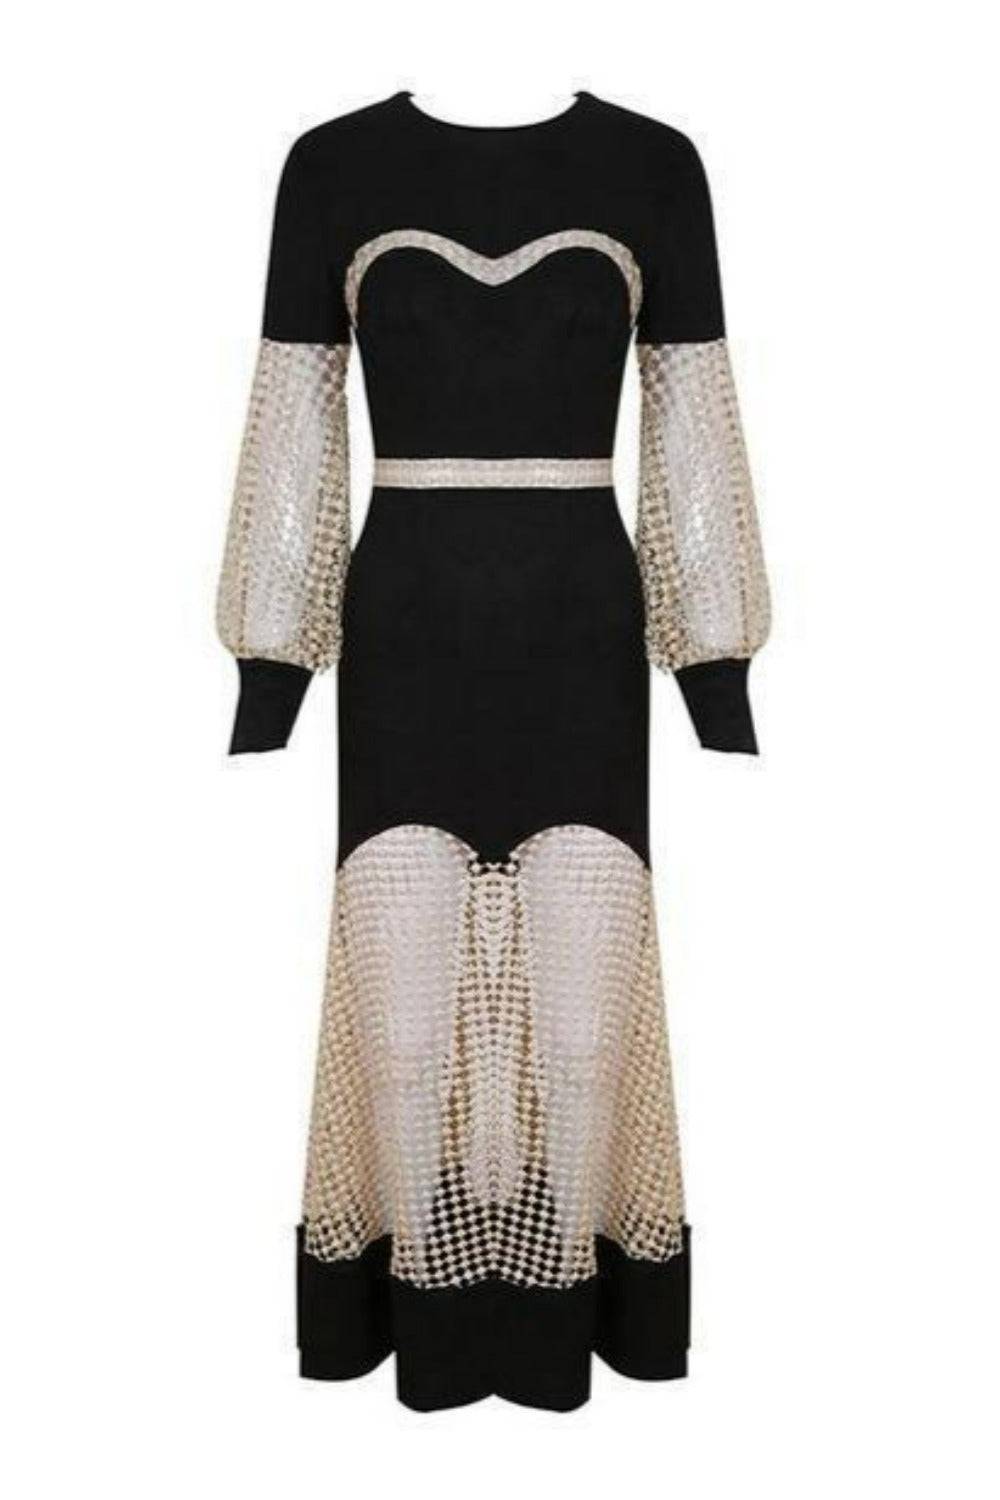 Luxury Gown Black Lace Hollow Out Mesh Dress - TGC Boutique -